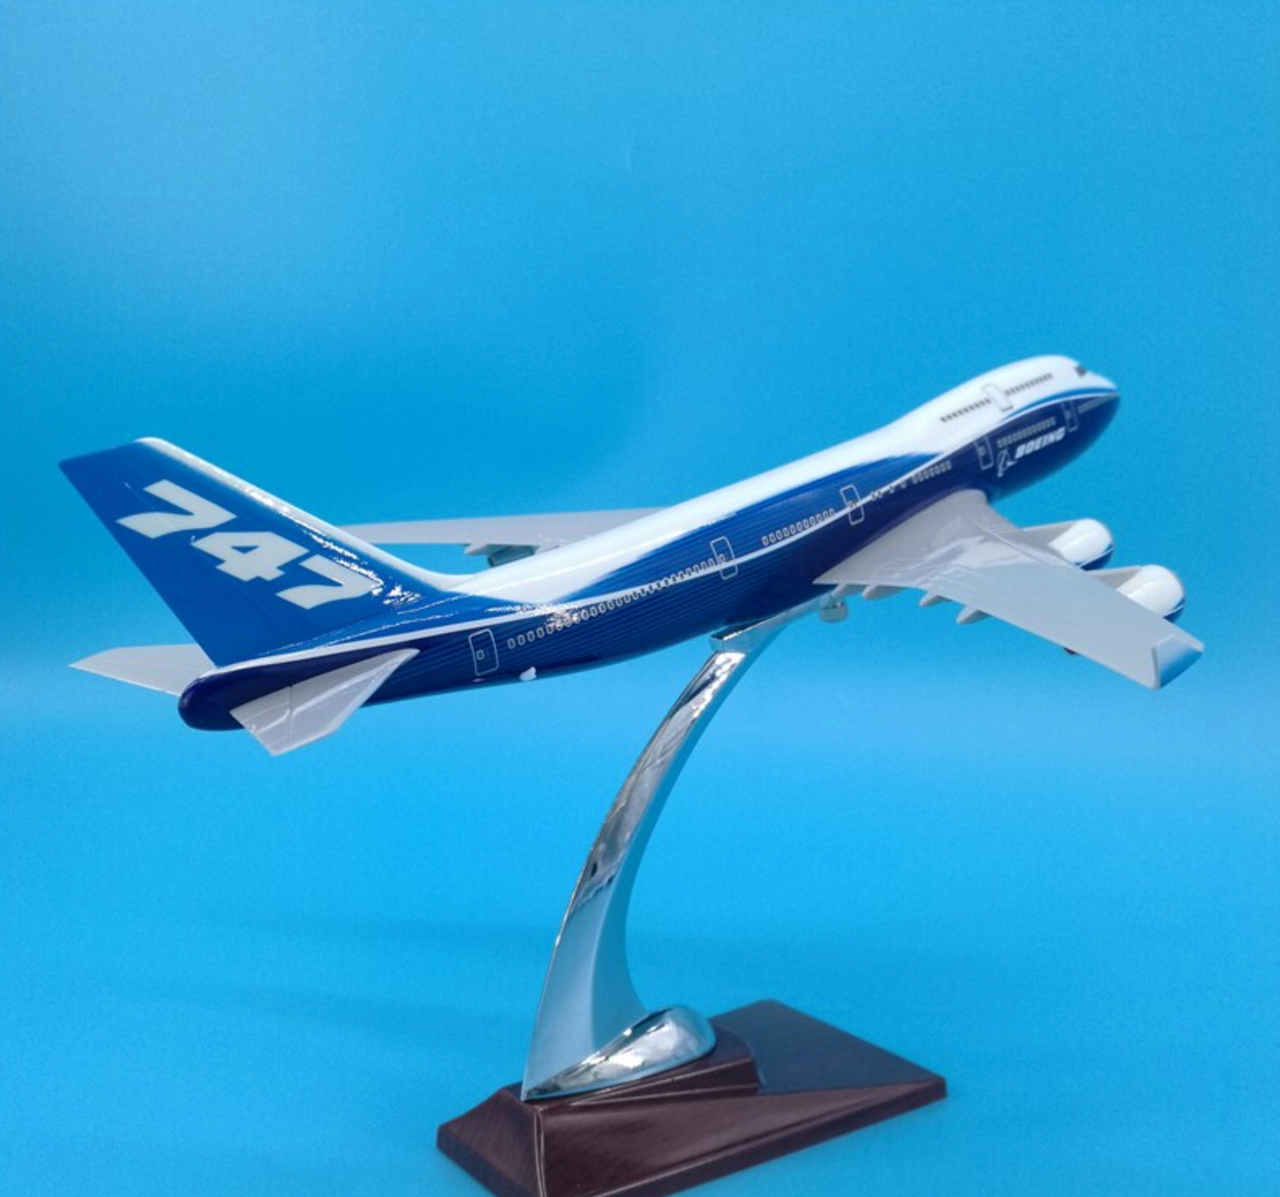 Boeing 747-400 Original Livery Airplane Model (Special 32CM)